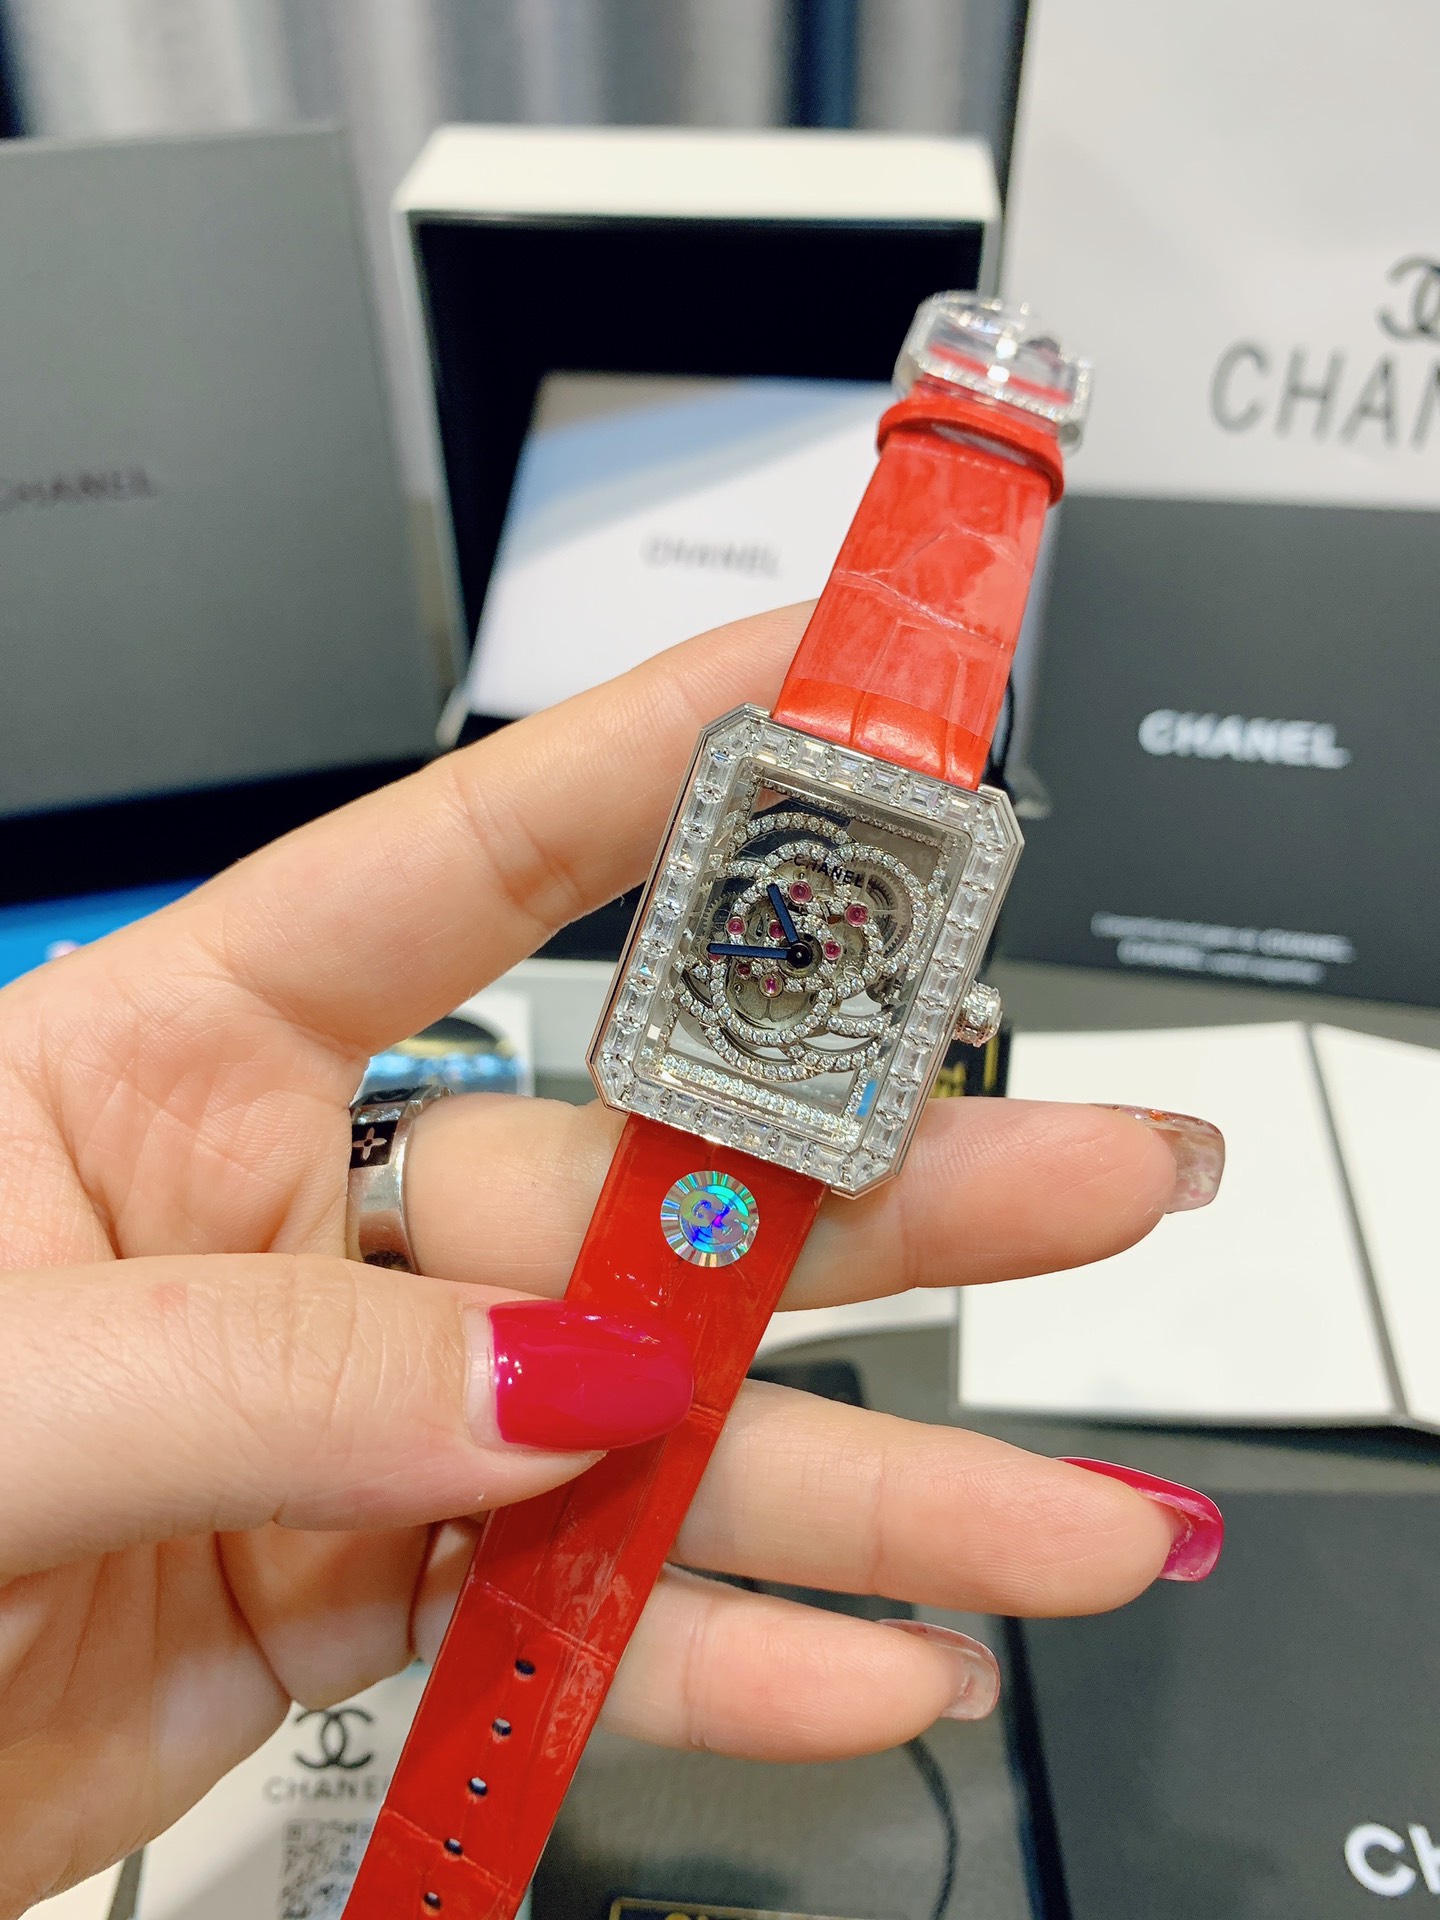 CHANEL 高級時計 リシャールミルｎ級品 優雅 レディース 薄いワッチ プレゼント レッド_1